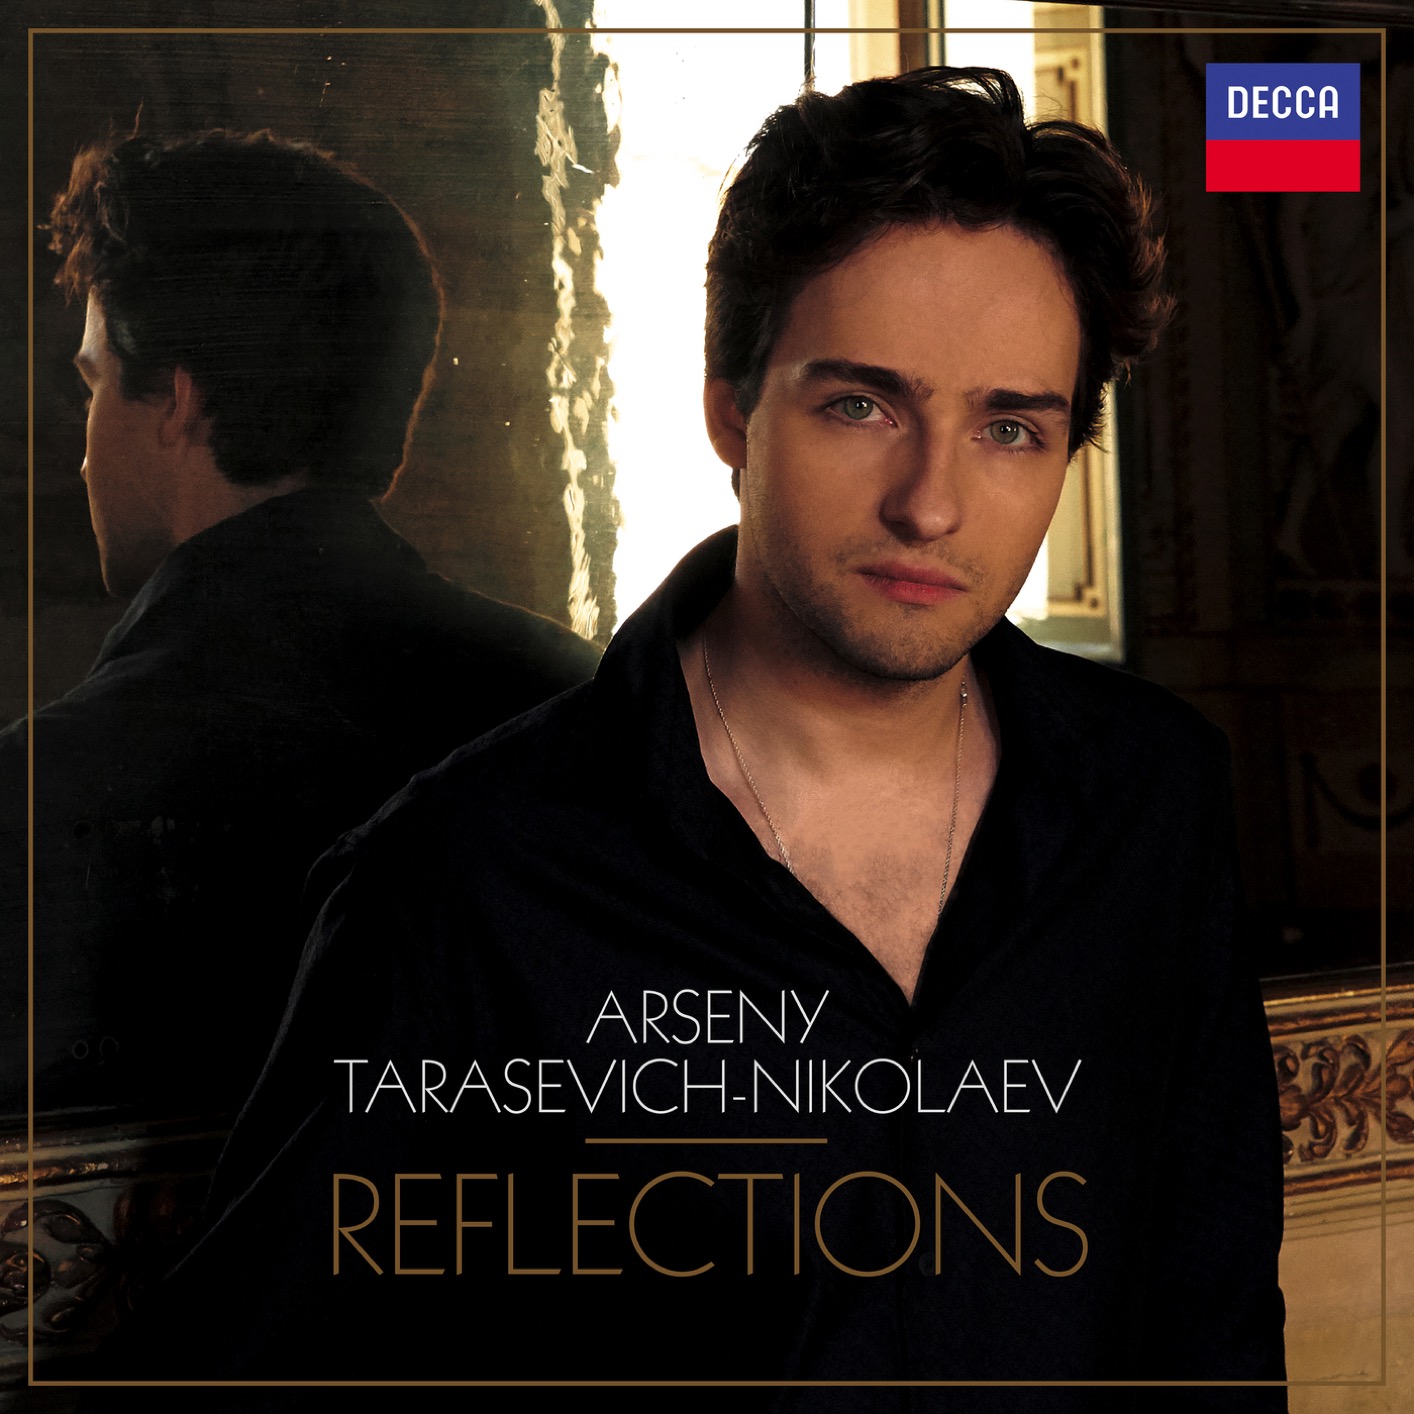 Arseny Tarasevich-Nikolaev - Reflections (2018) [FLAC 24bit/96kHz]